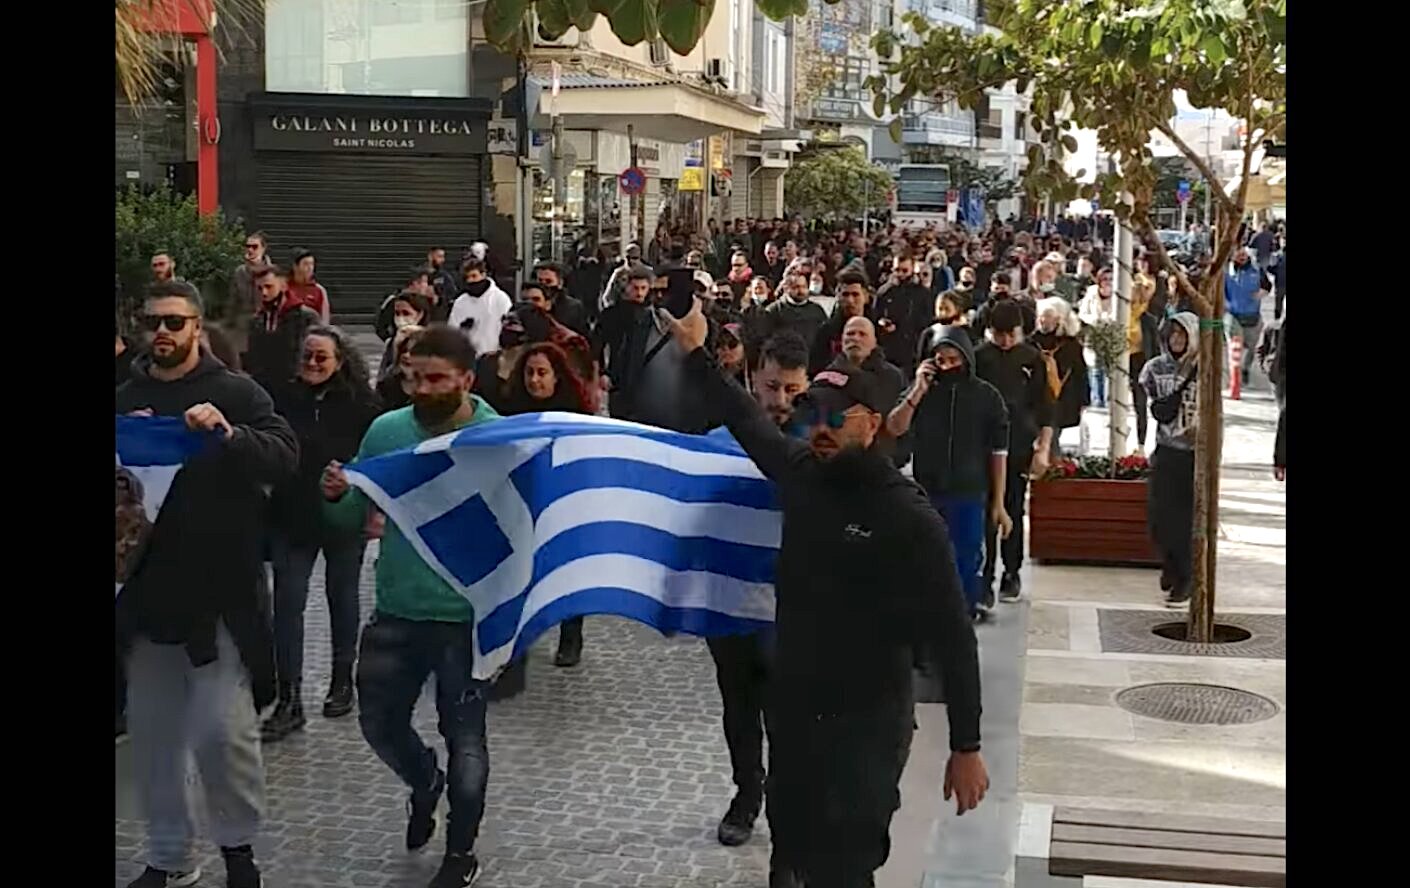 ΔΥΝΑΤΗ παρουσία Ελλήνων διαδηλωτών-πατριωτών σε όλη την Ελλάδα!!!! Από ΣΗΜΕΡΑ ξαναπαίρνουμε  τις ζωές μας από τη χουντοκυβέρνηση του ΨΕΥΔΟ-COVID!!!